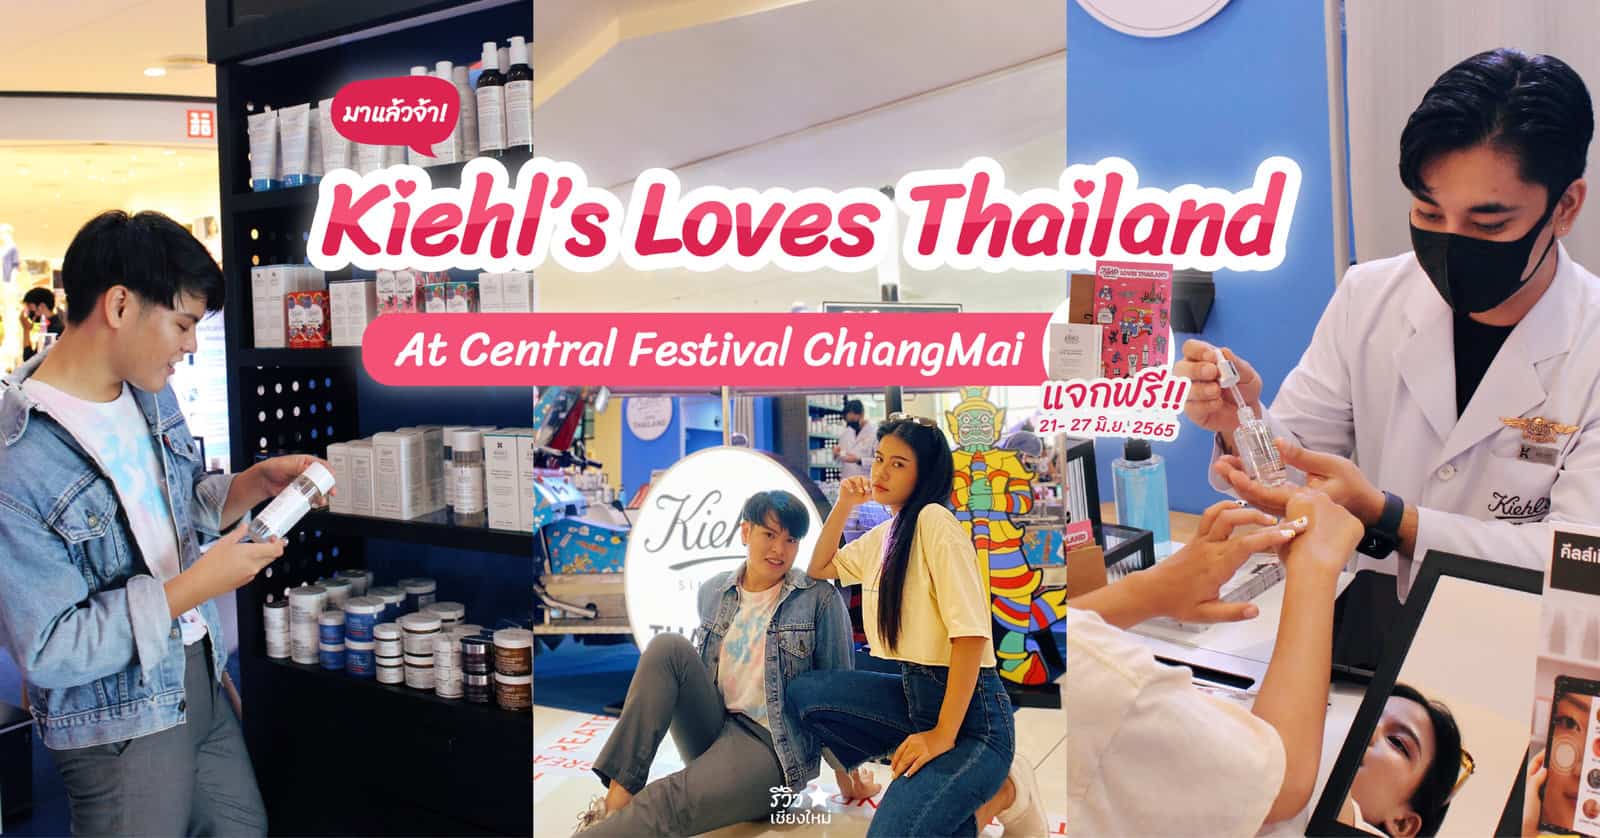 Kiehl’s Loves Thailand